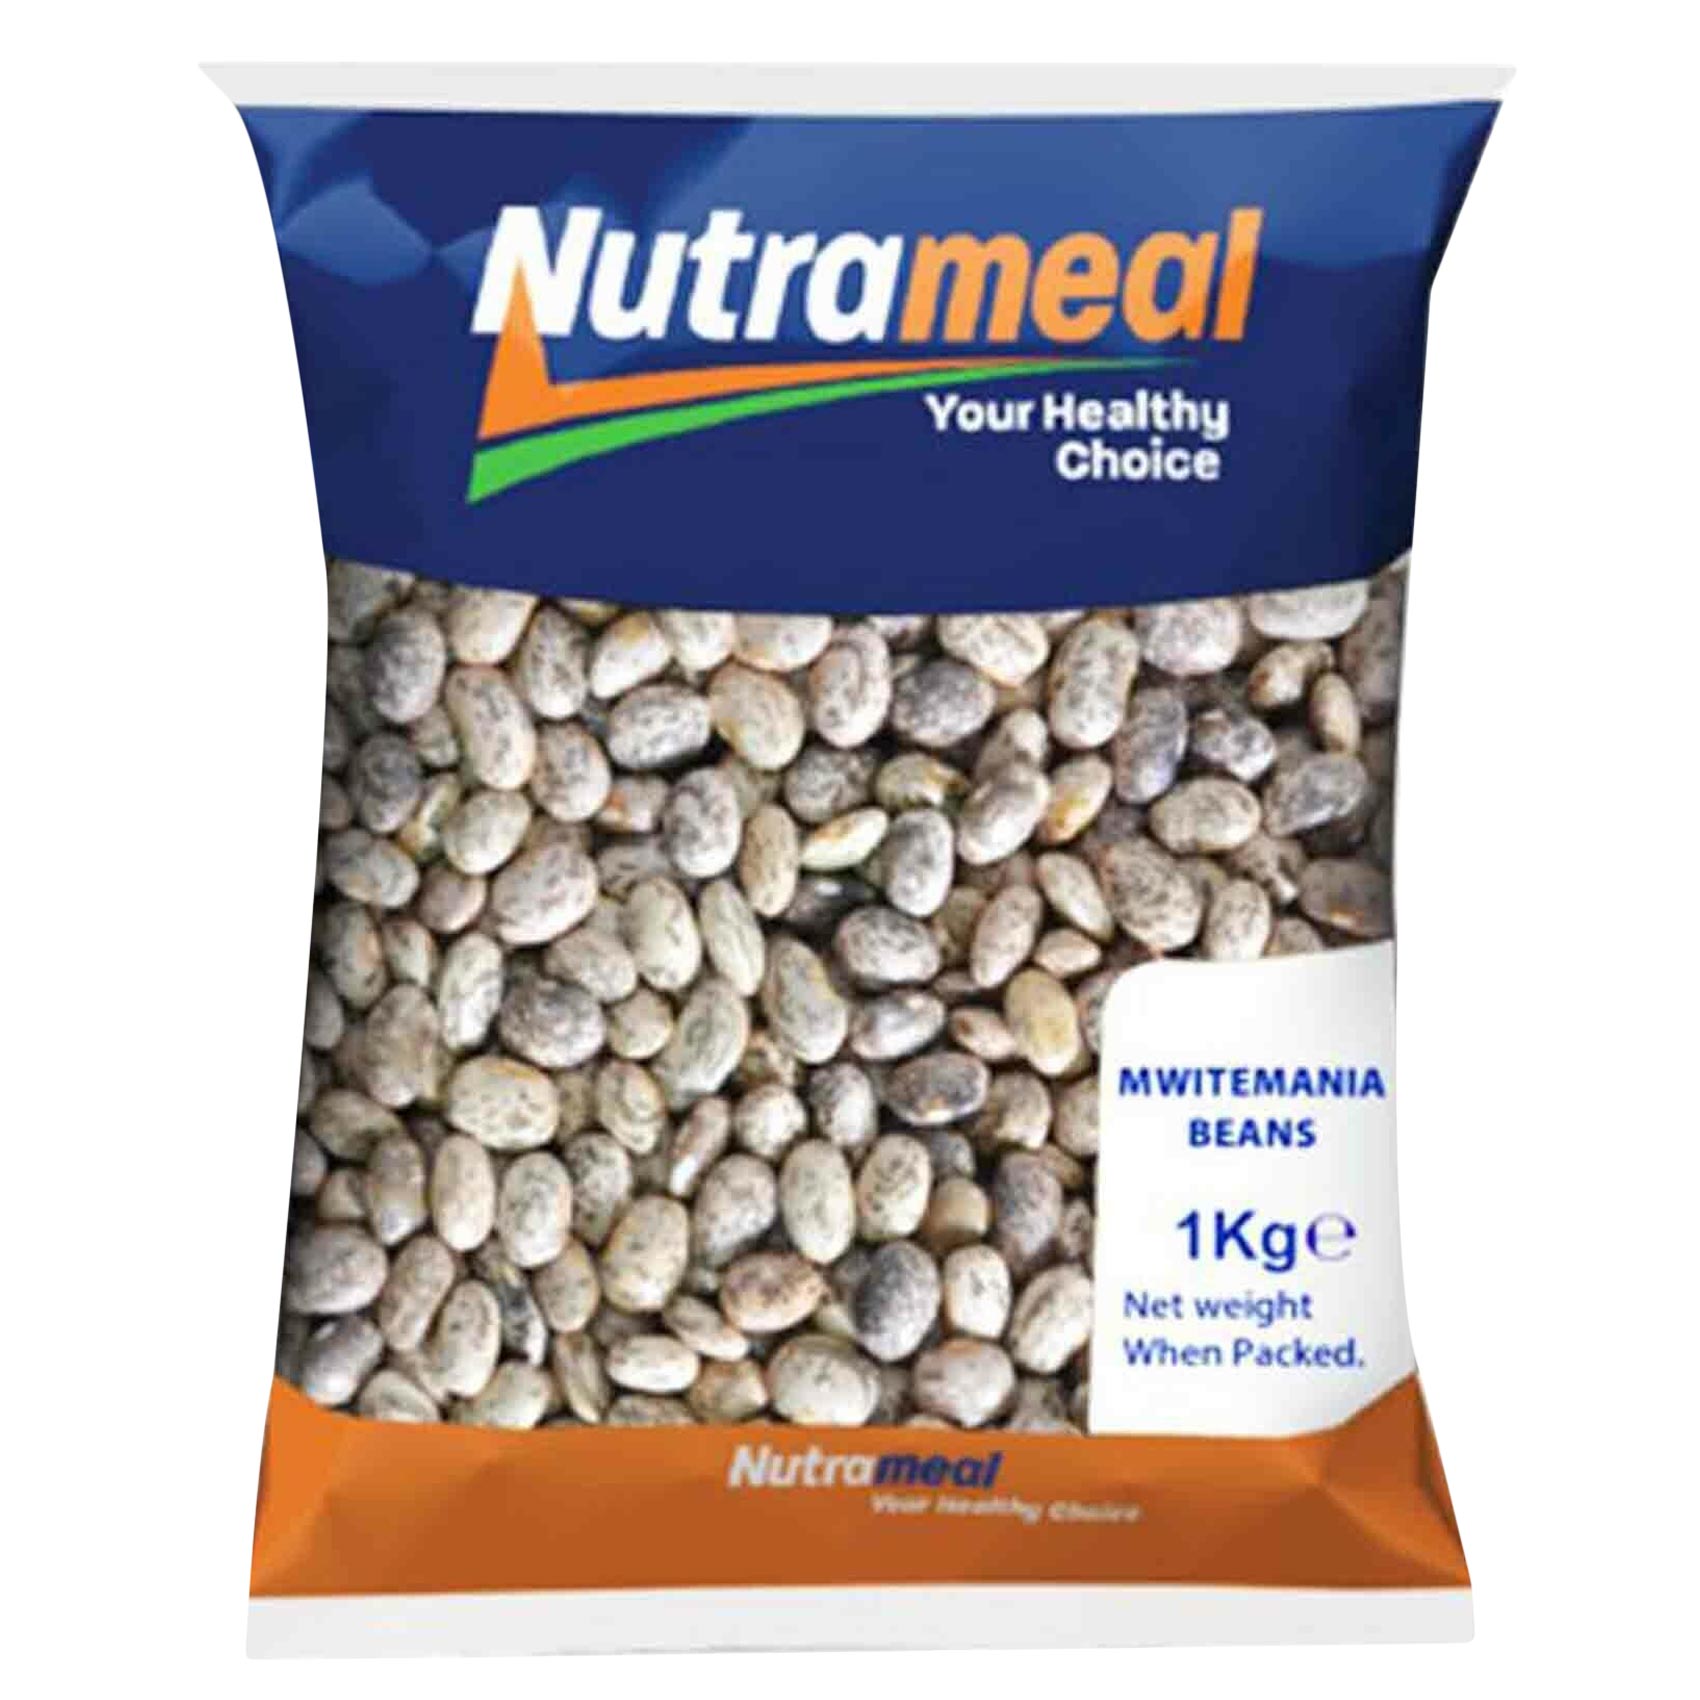 Nutrameal Mwitemania Beans 1Kg